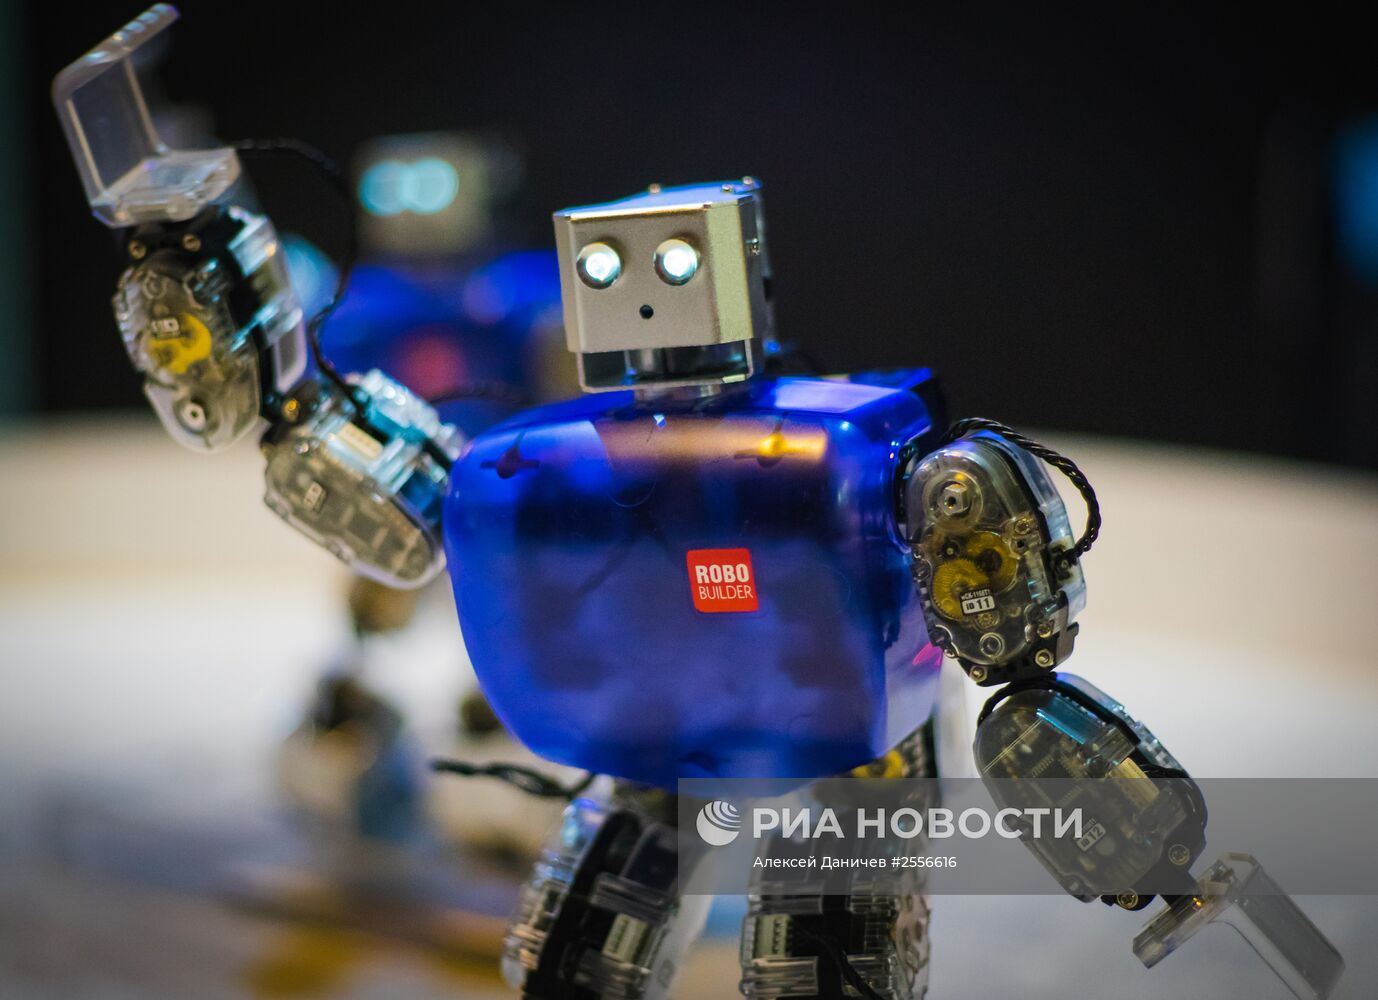 Интерактивная выставка "Бал роботов"